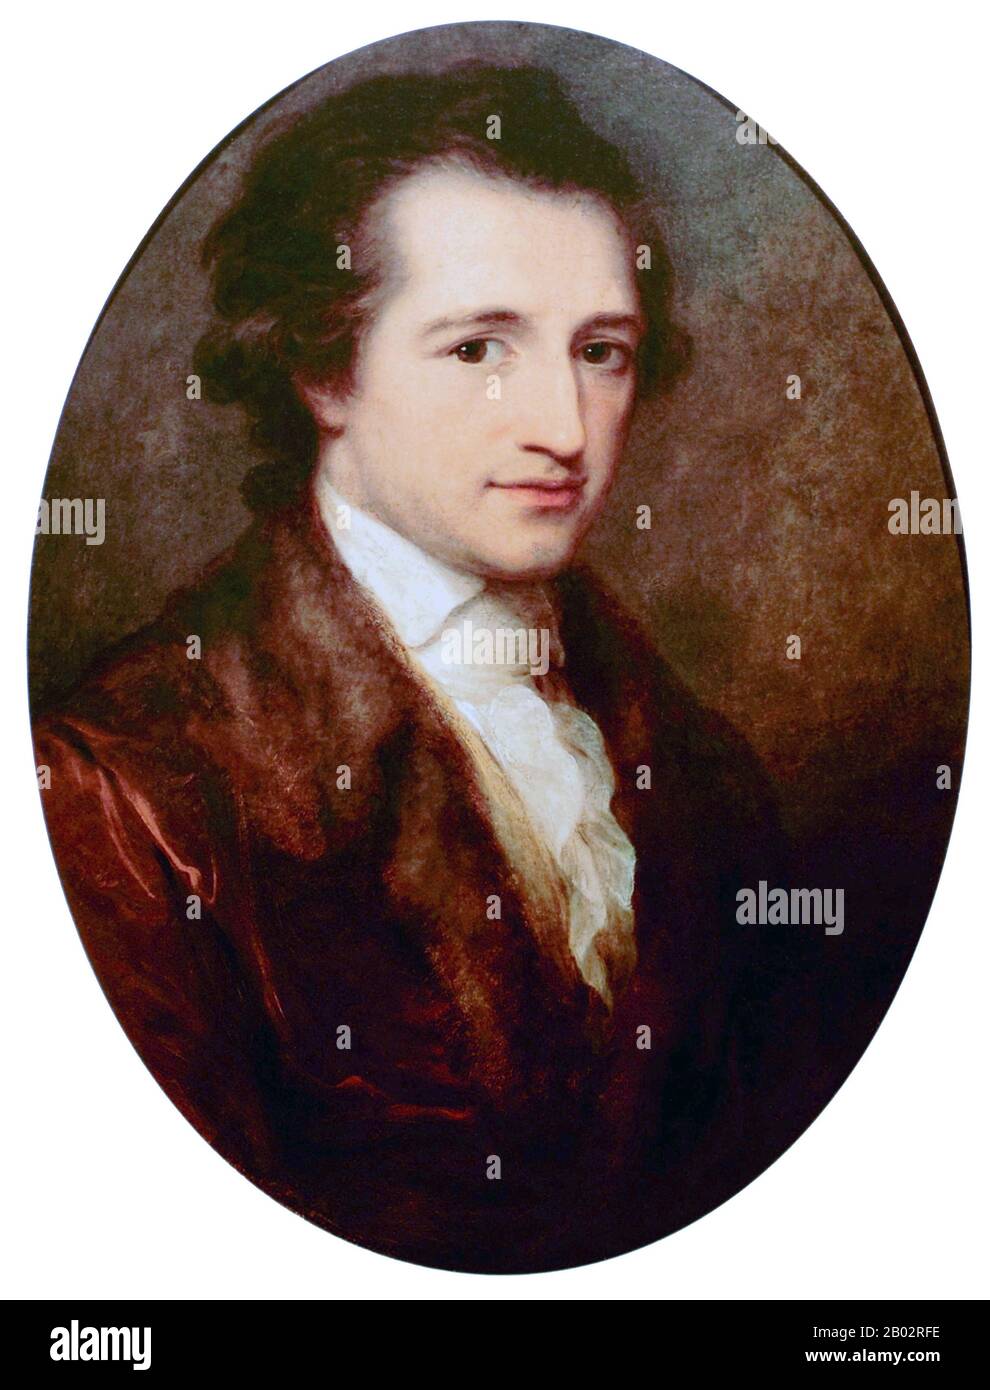 Johann Wolfgang von Goethe-Institut (28. August 1749 - 22. März 1832) war ein deutscher Schriftsteller und Staatsmann. Sein Werk umfasst epische und lyrische Lyrik, die in einer Vielzahl von Metern und Stilen geschrieben ist; Prosa- und Versdramen; Memoiren; eine Autobiografie; Literatur- und ästhetische Kritik; Abhandlungen über Botanik, Anatomie und Farbe; und vier Romane. Darüber hinaus sind zahlreiche literarische und wissenschaftliche Fragmente, mehr als 10.000 Briefe und fast 3.000 Zeichnungen von ihm erhalten. Als literarische Berühmtheit mit 25 Jahren wurde von dem Herzog von Sachsen-Weimar, Karl August, im Jahre 17855 nach der ersten Aufnahme der Residenz TH verärscht Stockfoto